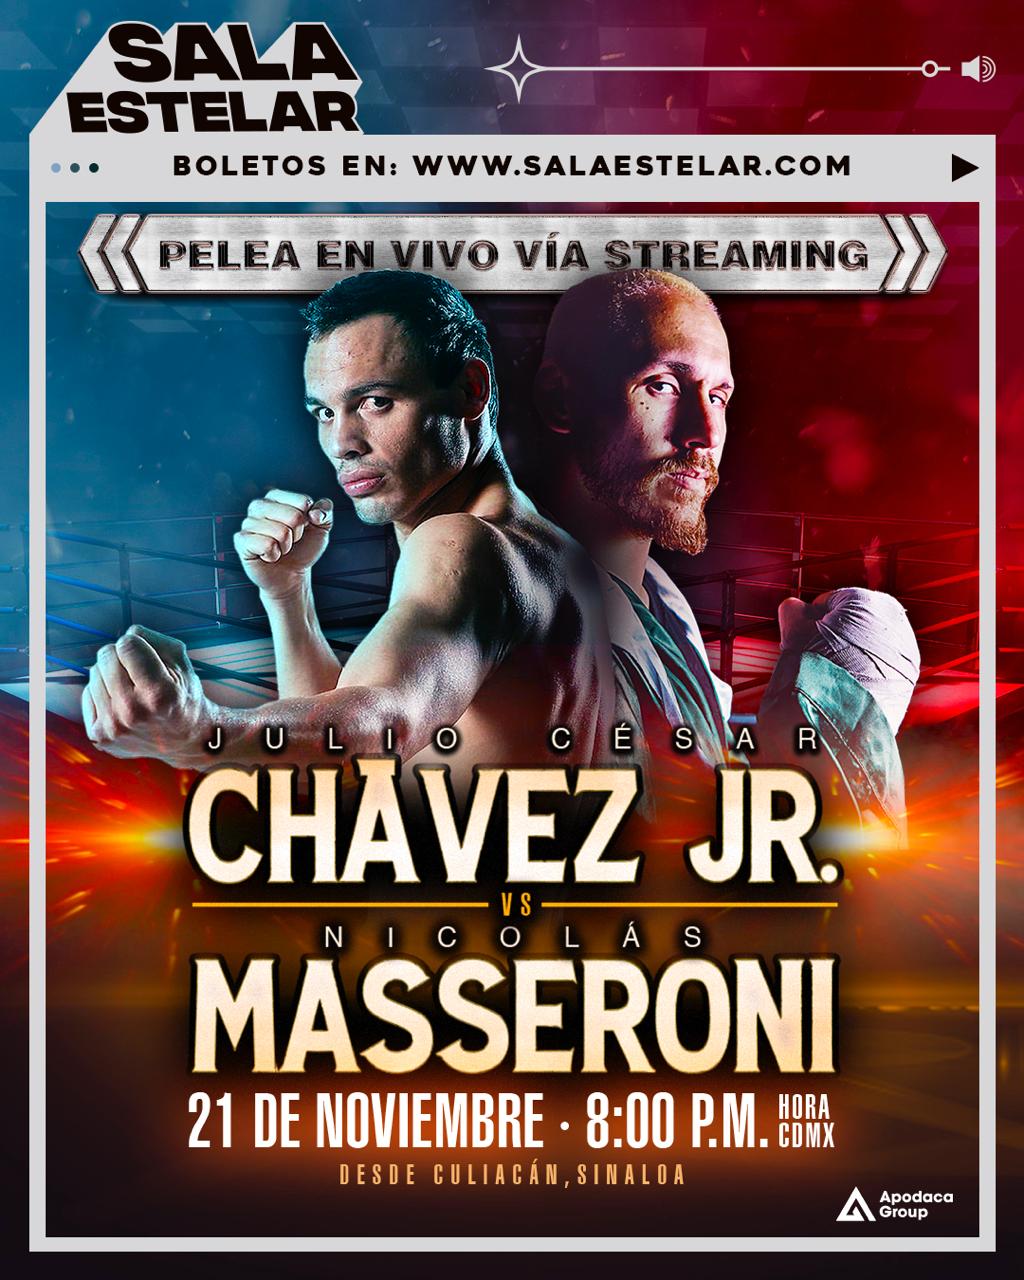 El combate será este 21 de noviembre en Culiacán, México